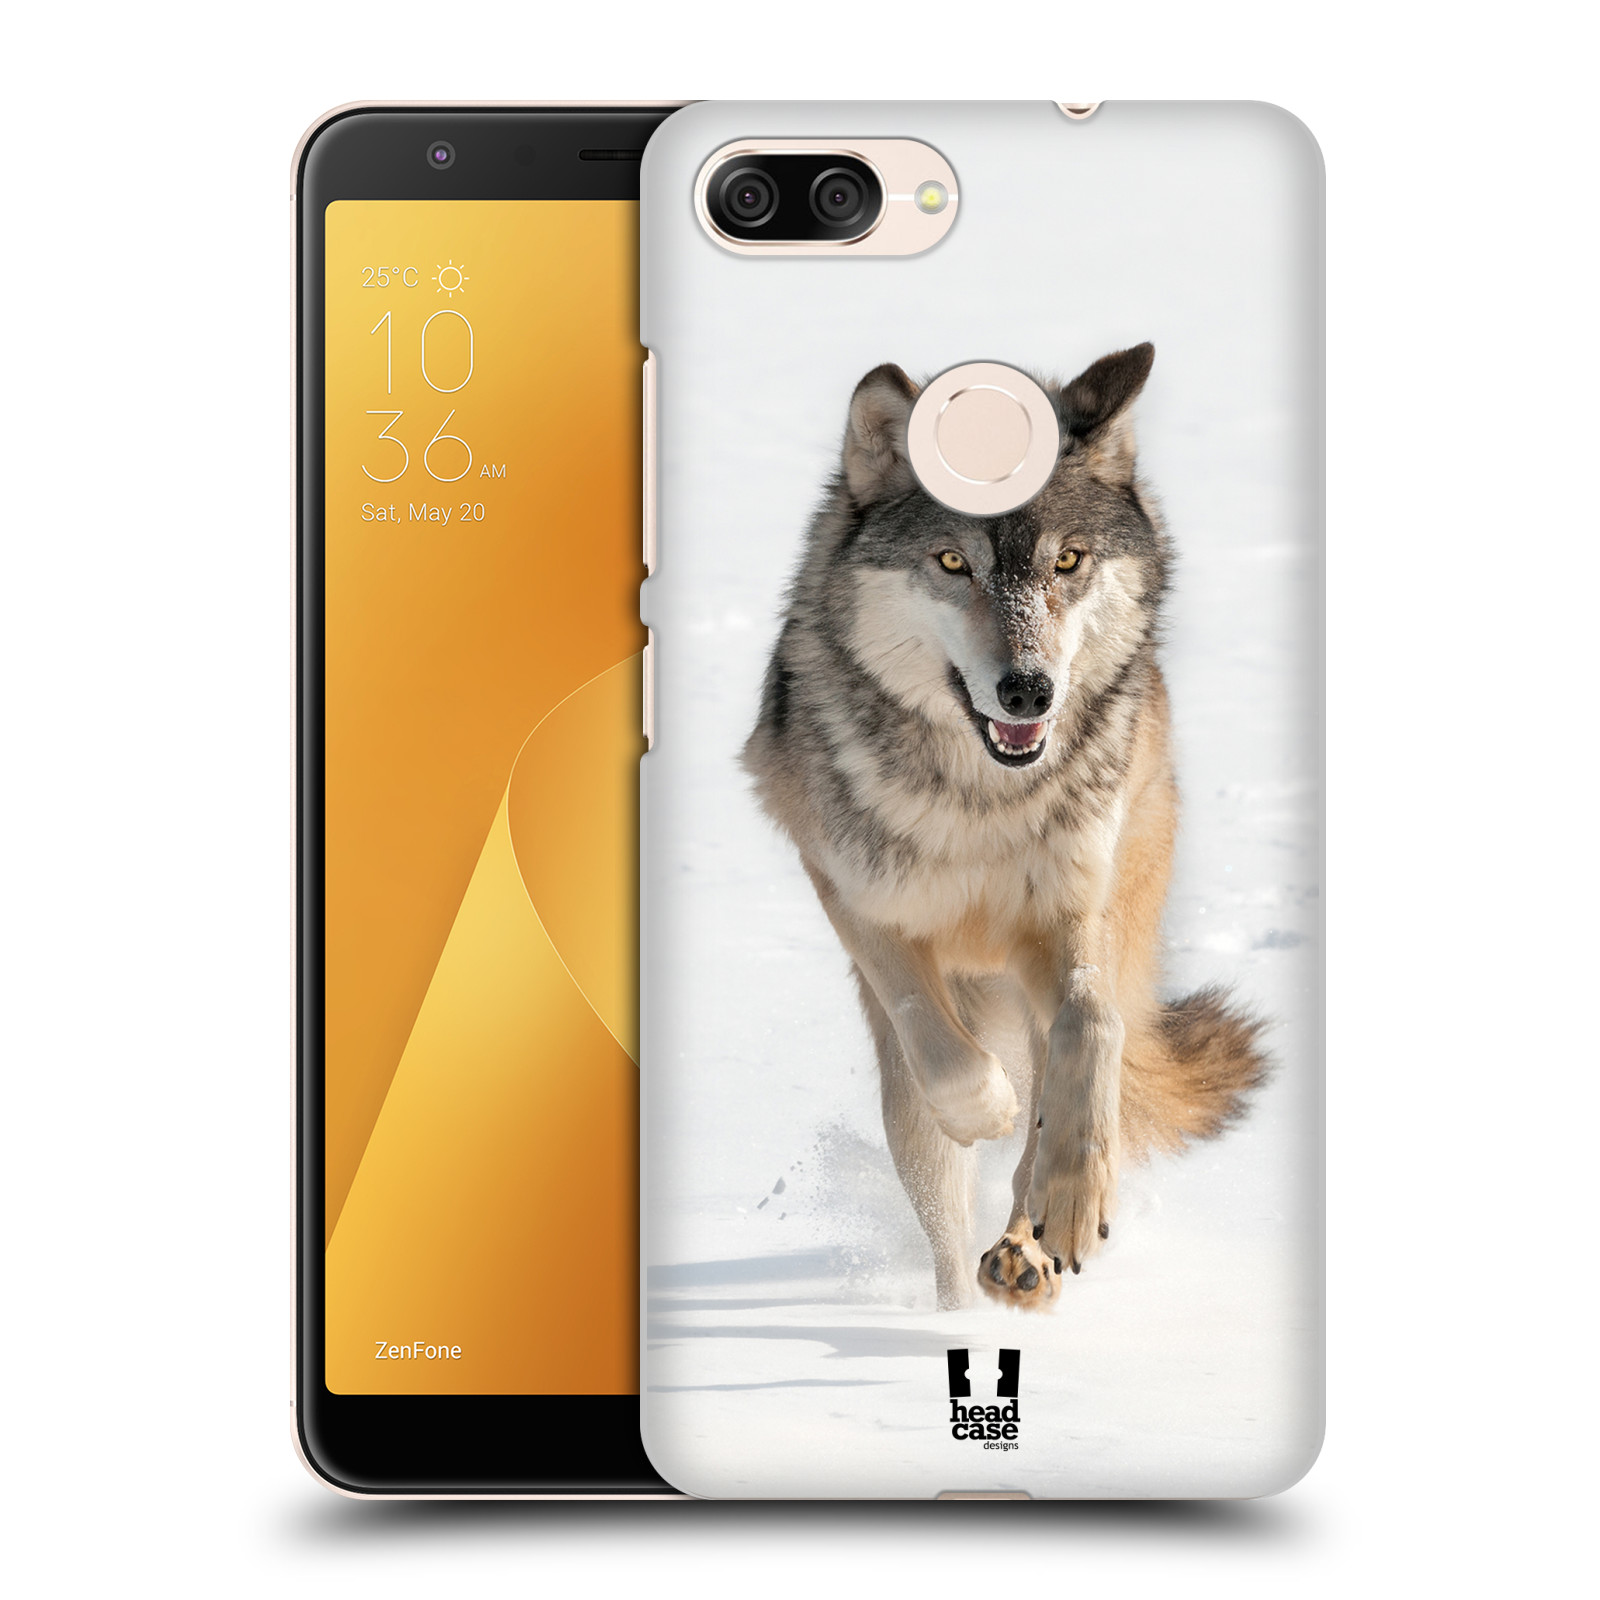 Zadní obal pro mobil Asus Zenfone Max Plus (M1) - HEAD CASE - Svět zvířat divoký vlk